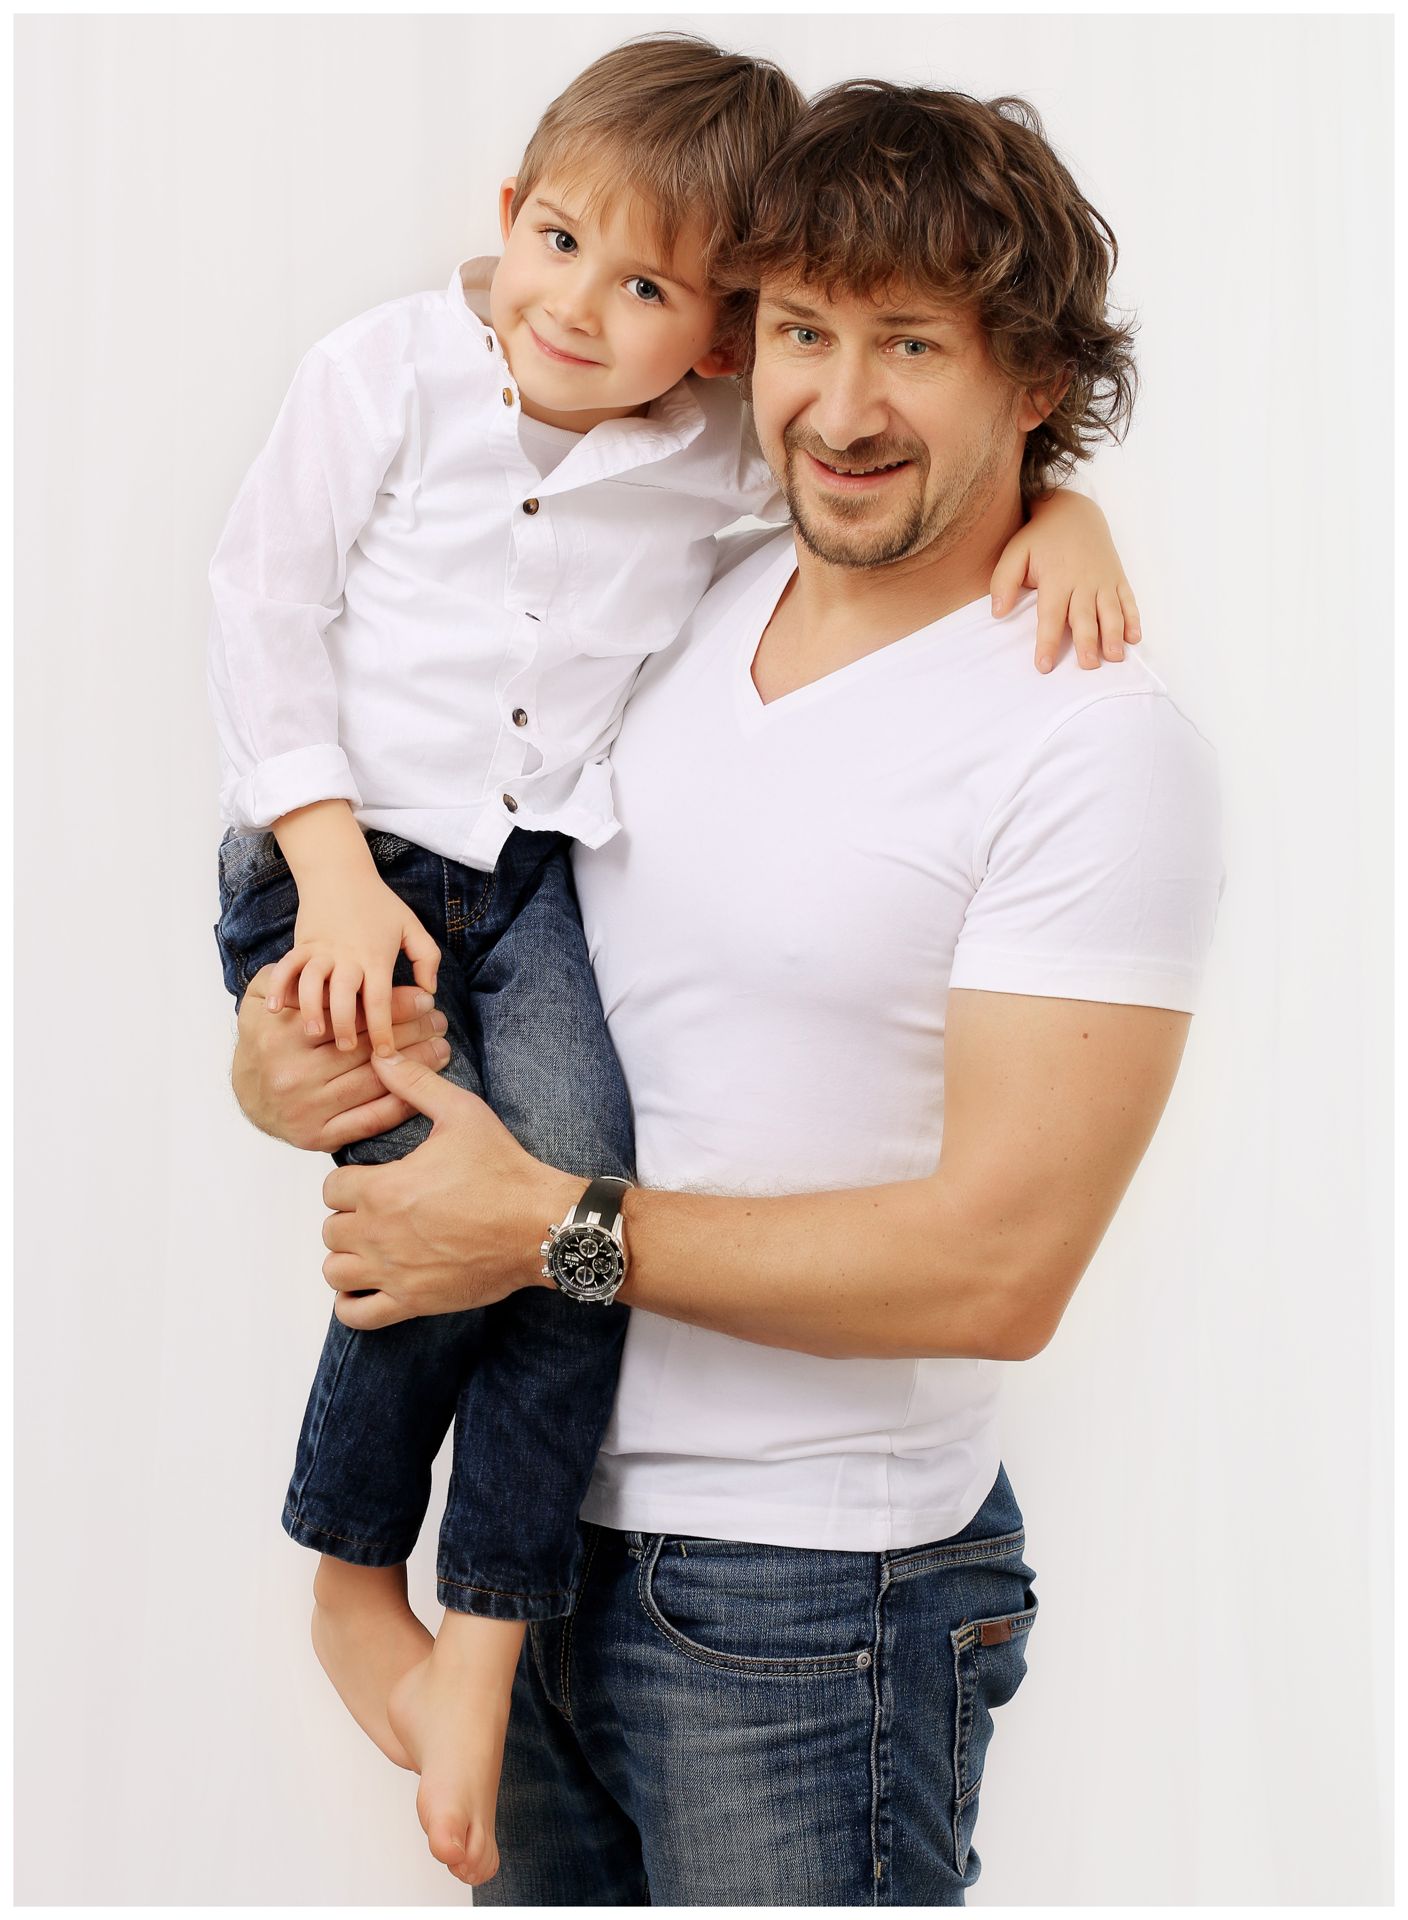 Fotografie táty a syna - David Křížek